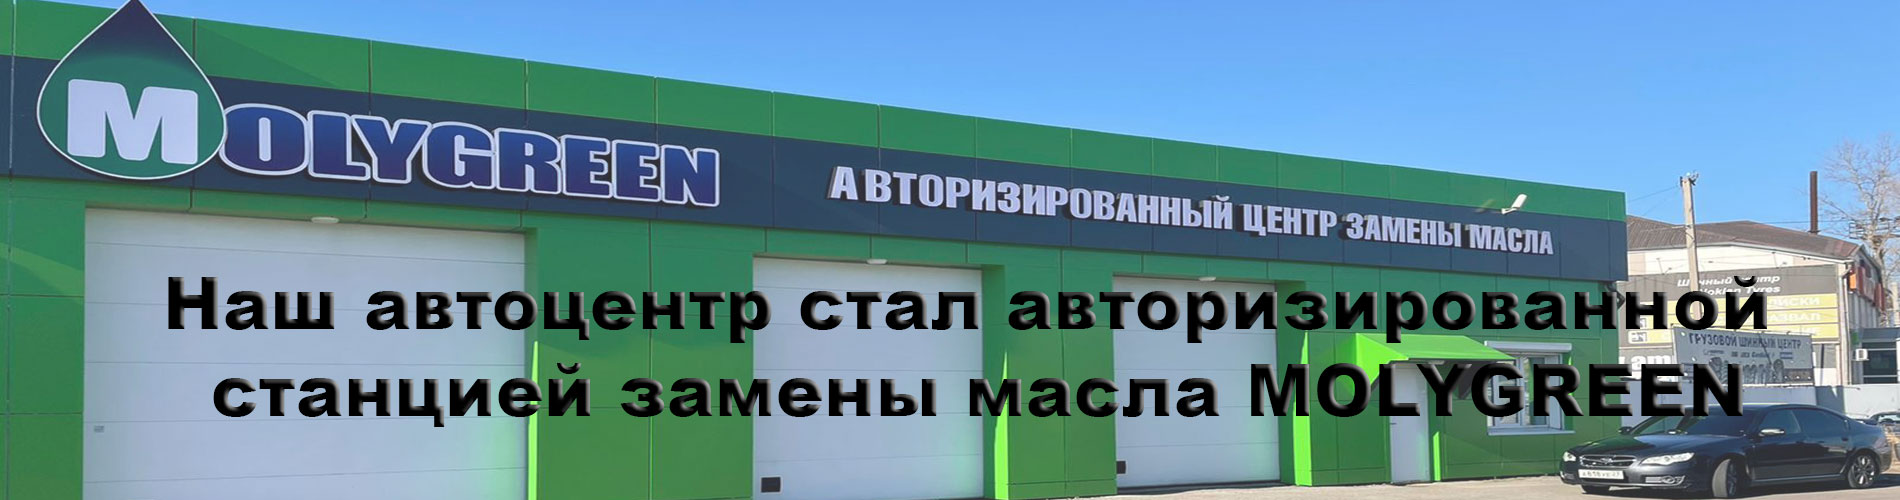 Запчасти Хабаровск Интернет Магазин